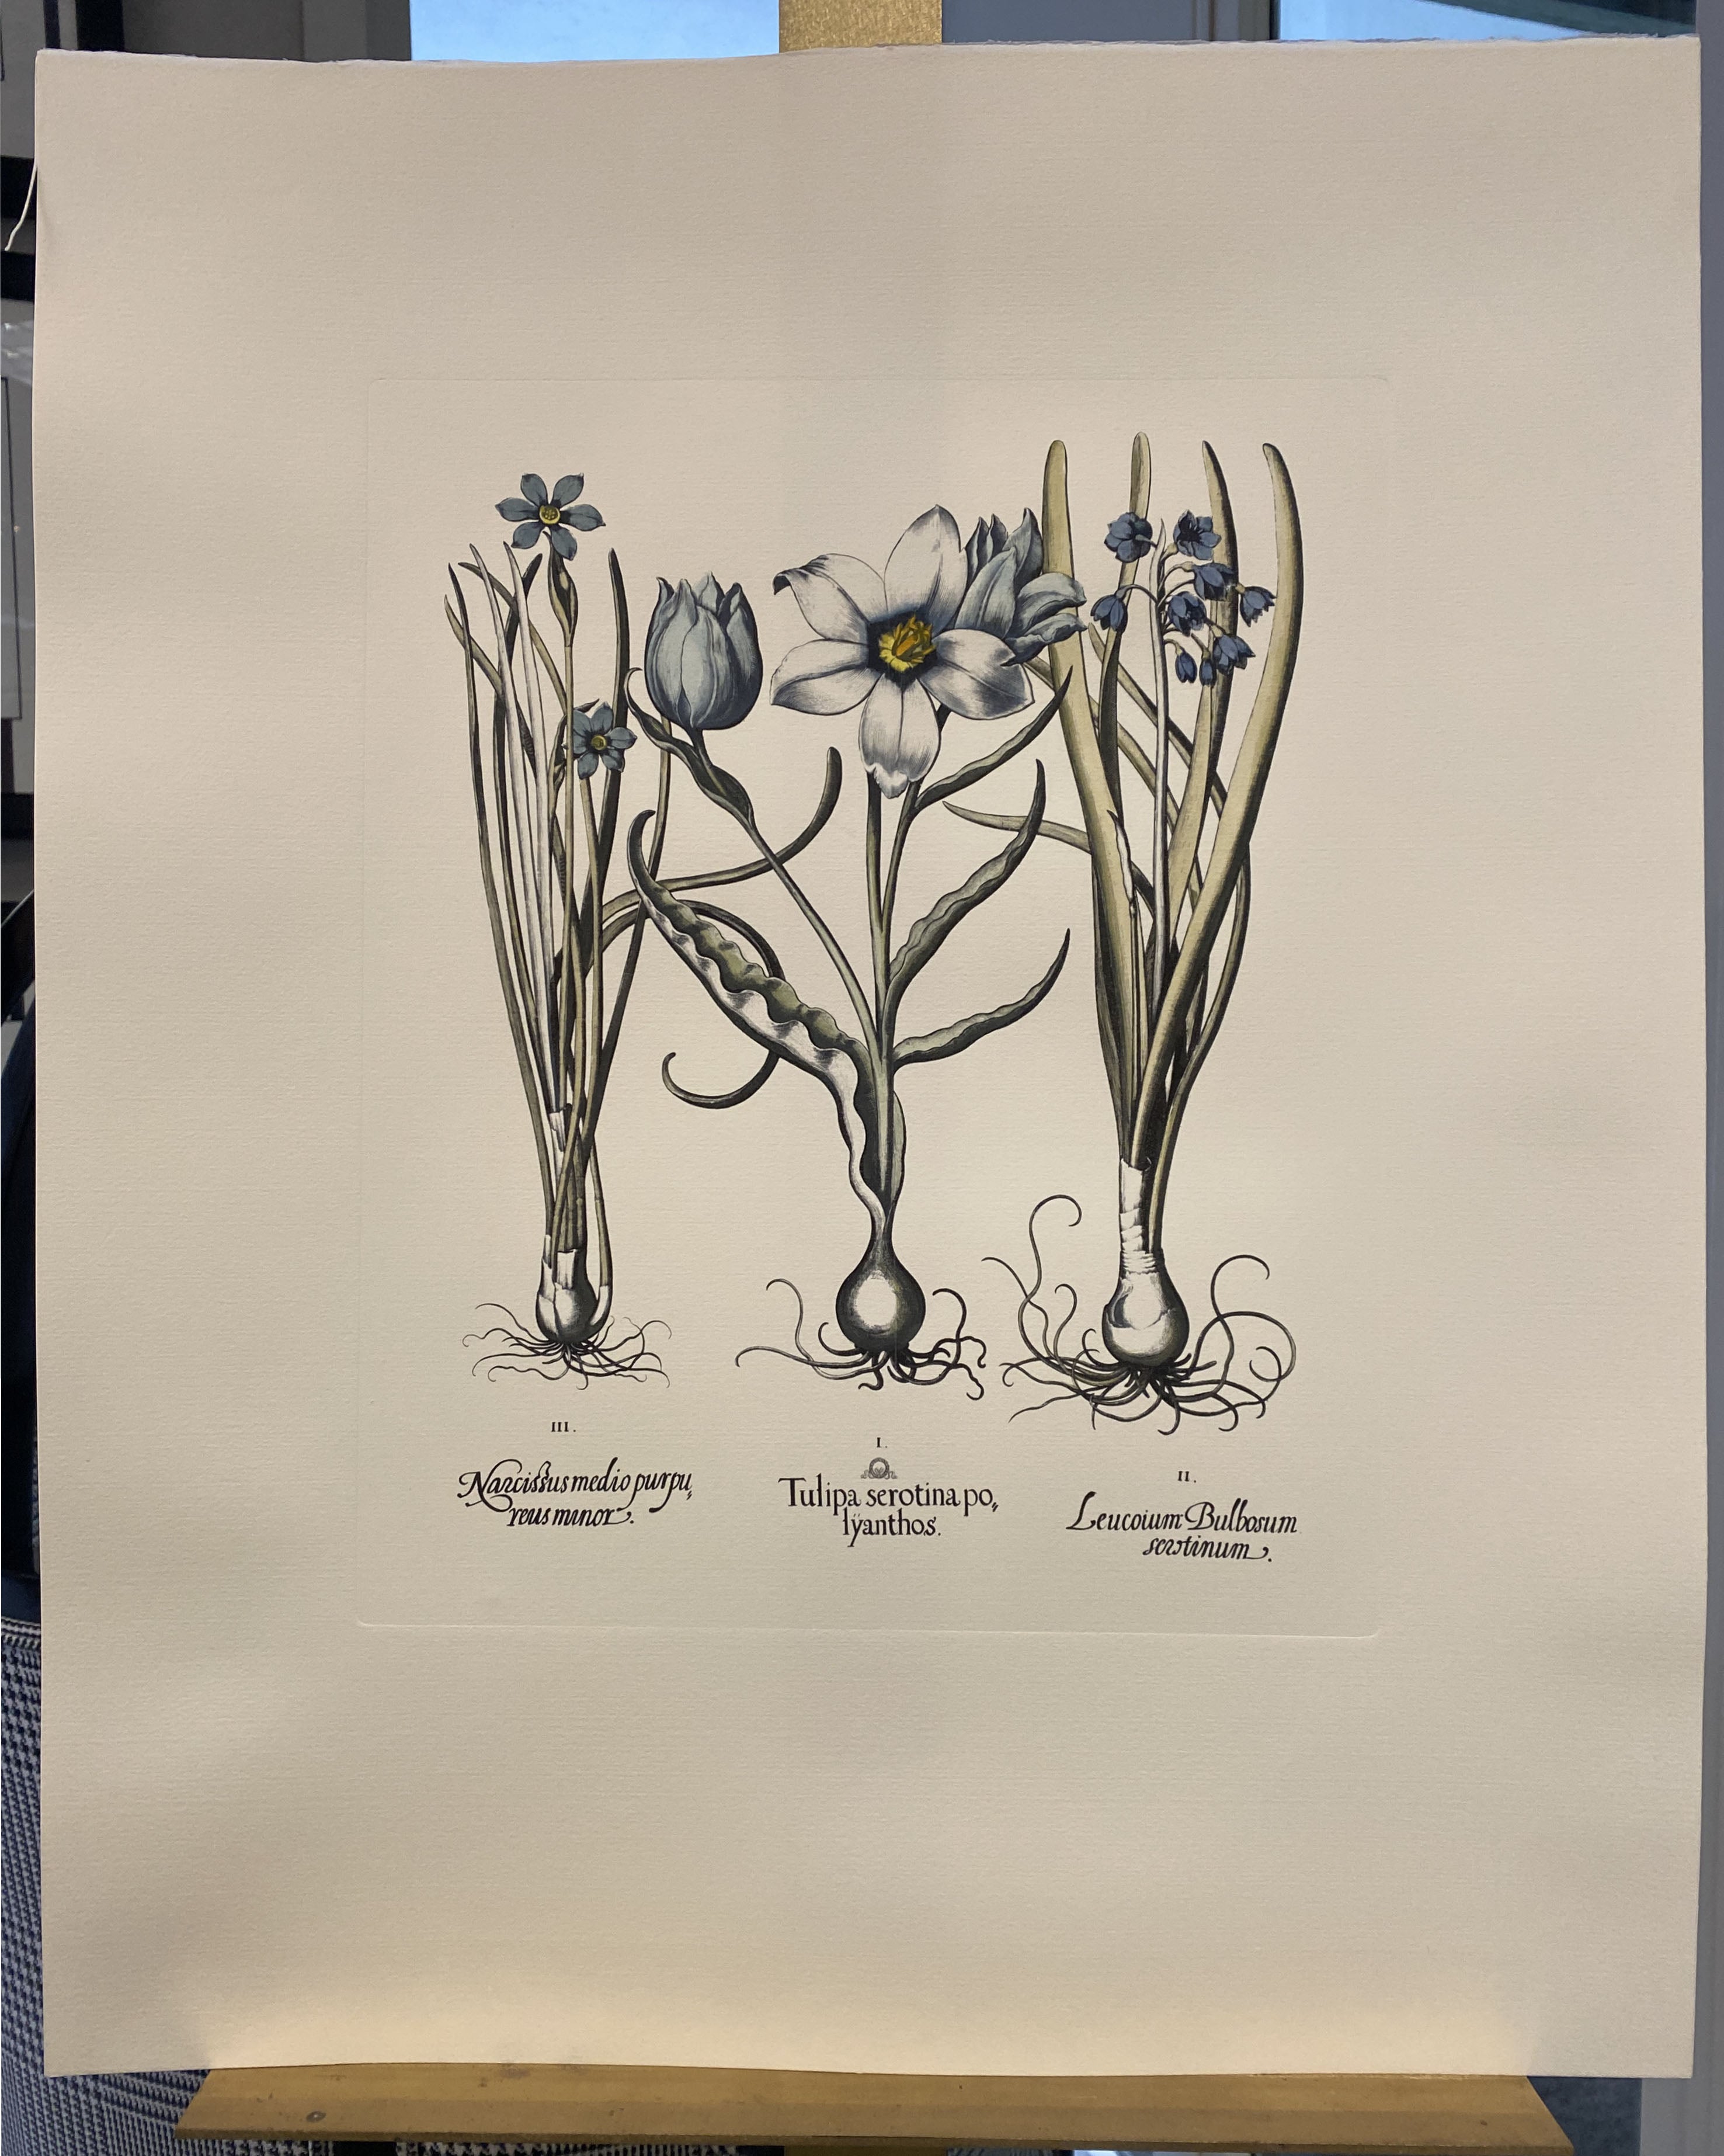 Druck aus der Collection Botanique Bulbacee, der Paeonia darstellt, angereichert mit blauen Farben und Nuancen von Aquarell.

Für eine farbenfrohe Komposition stehen auch verschiedene Blumendrucke von Bulbacee zur Verfügung, die von einem Designer